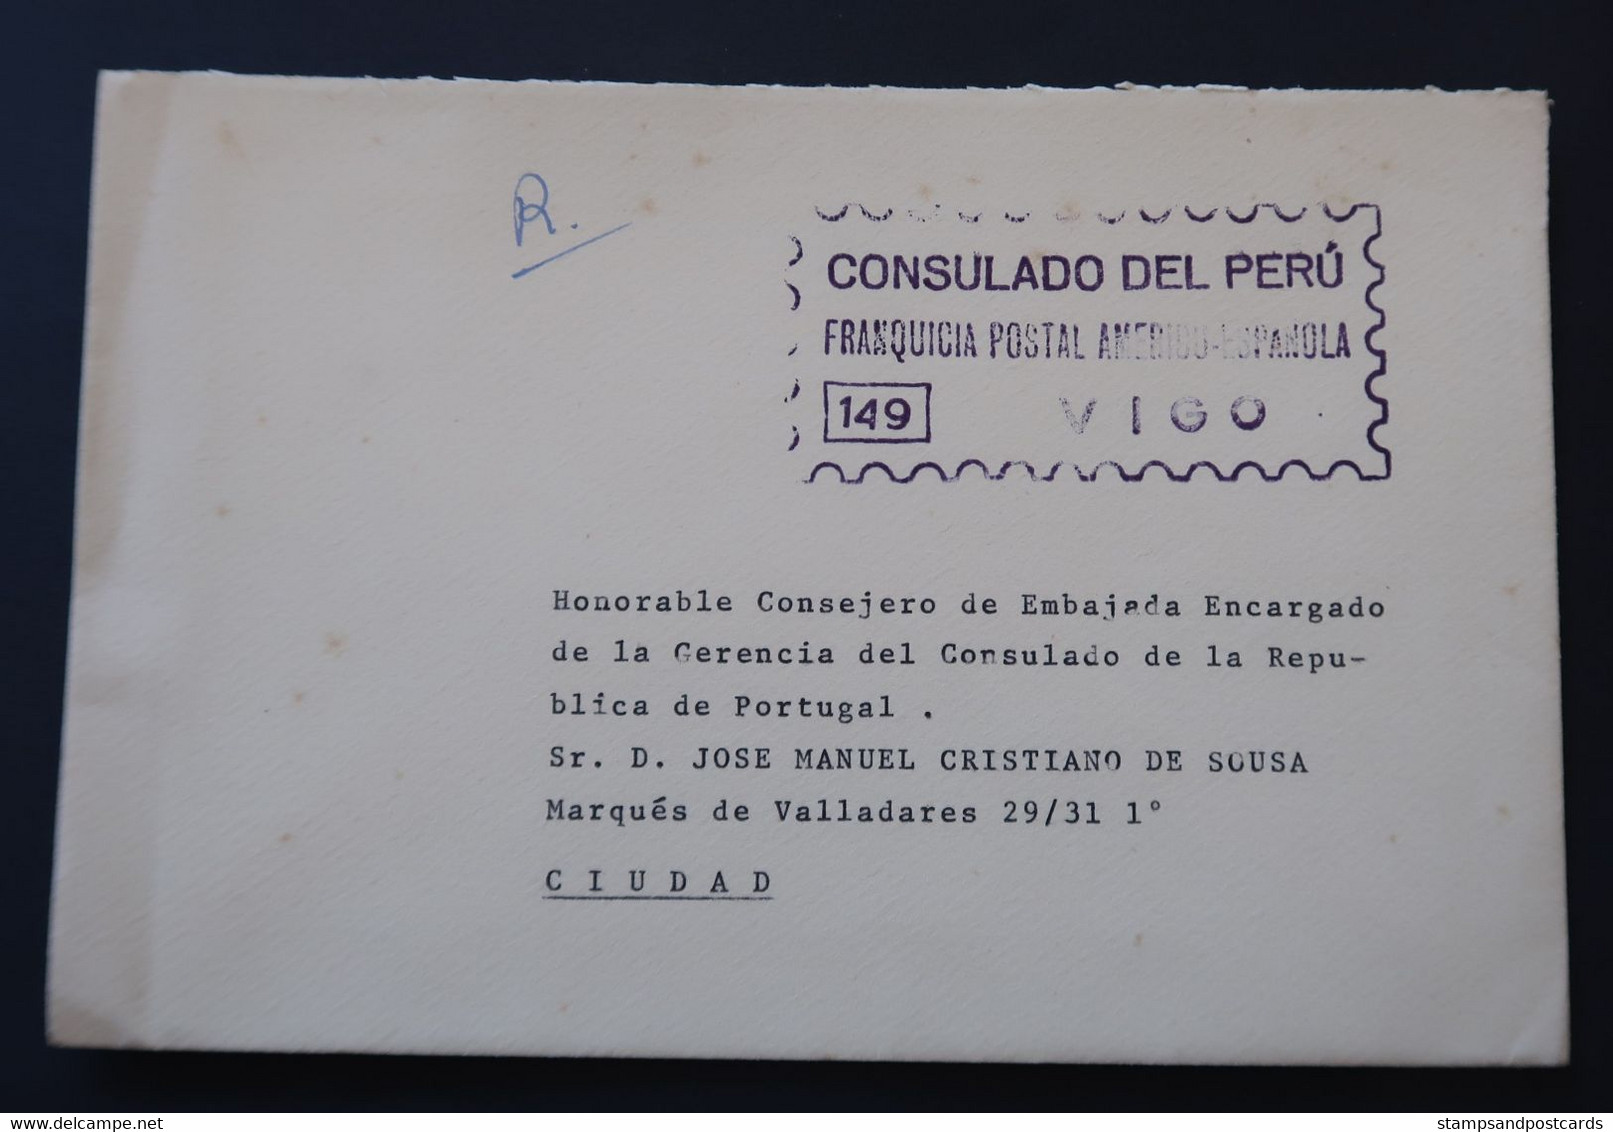 Espagne 1970 Lettre Franchise Postal Vigo Consulat Perú España Franquicia Consulado Peru Official Paid Spain - Franchigia Postale